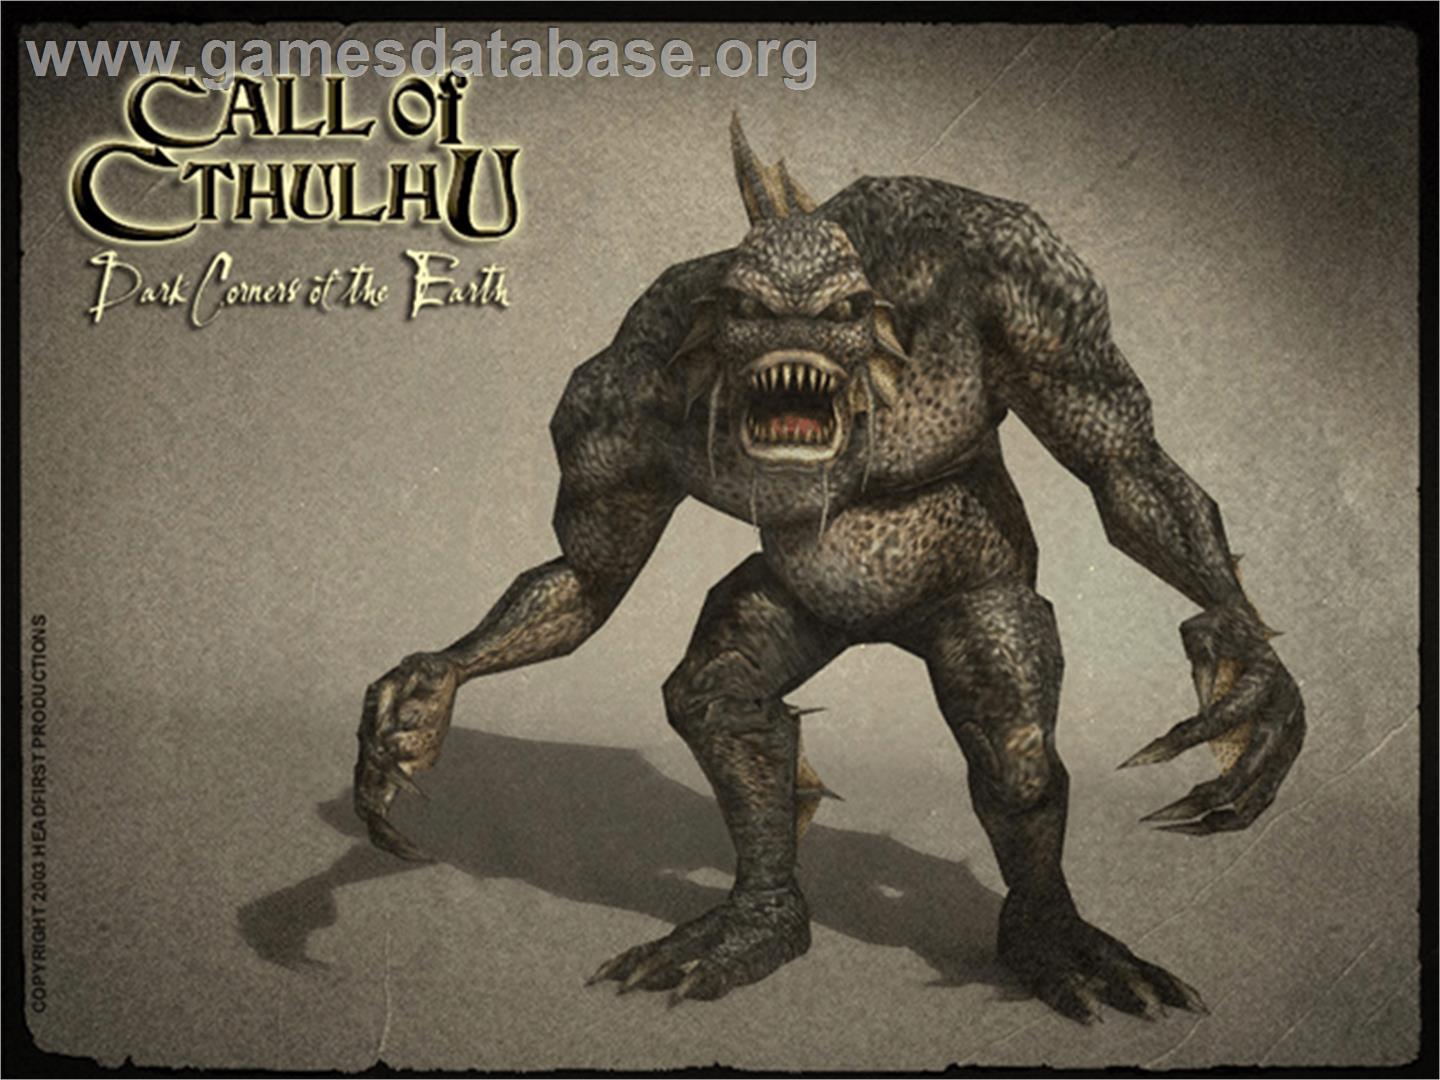 Call of Cthulhu: Dark Corners of the Earth - Microsoft Xbox - Artwork - Title Screen